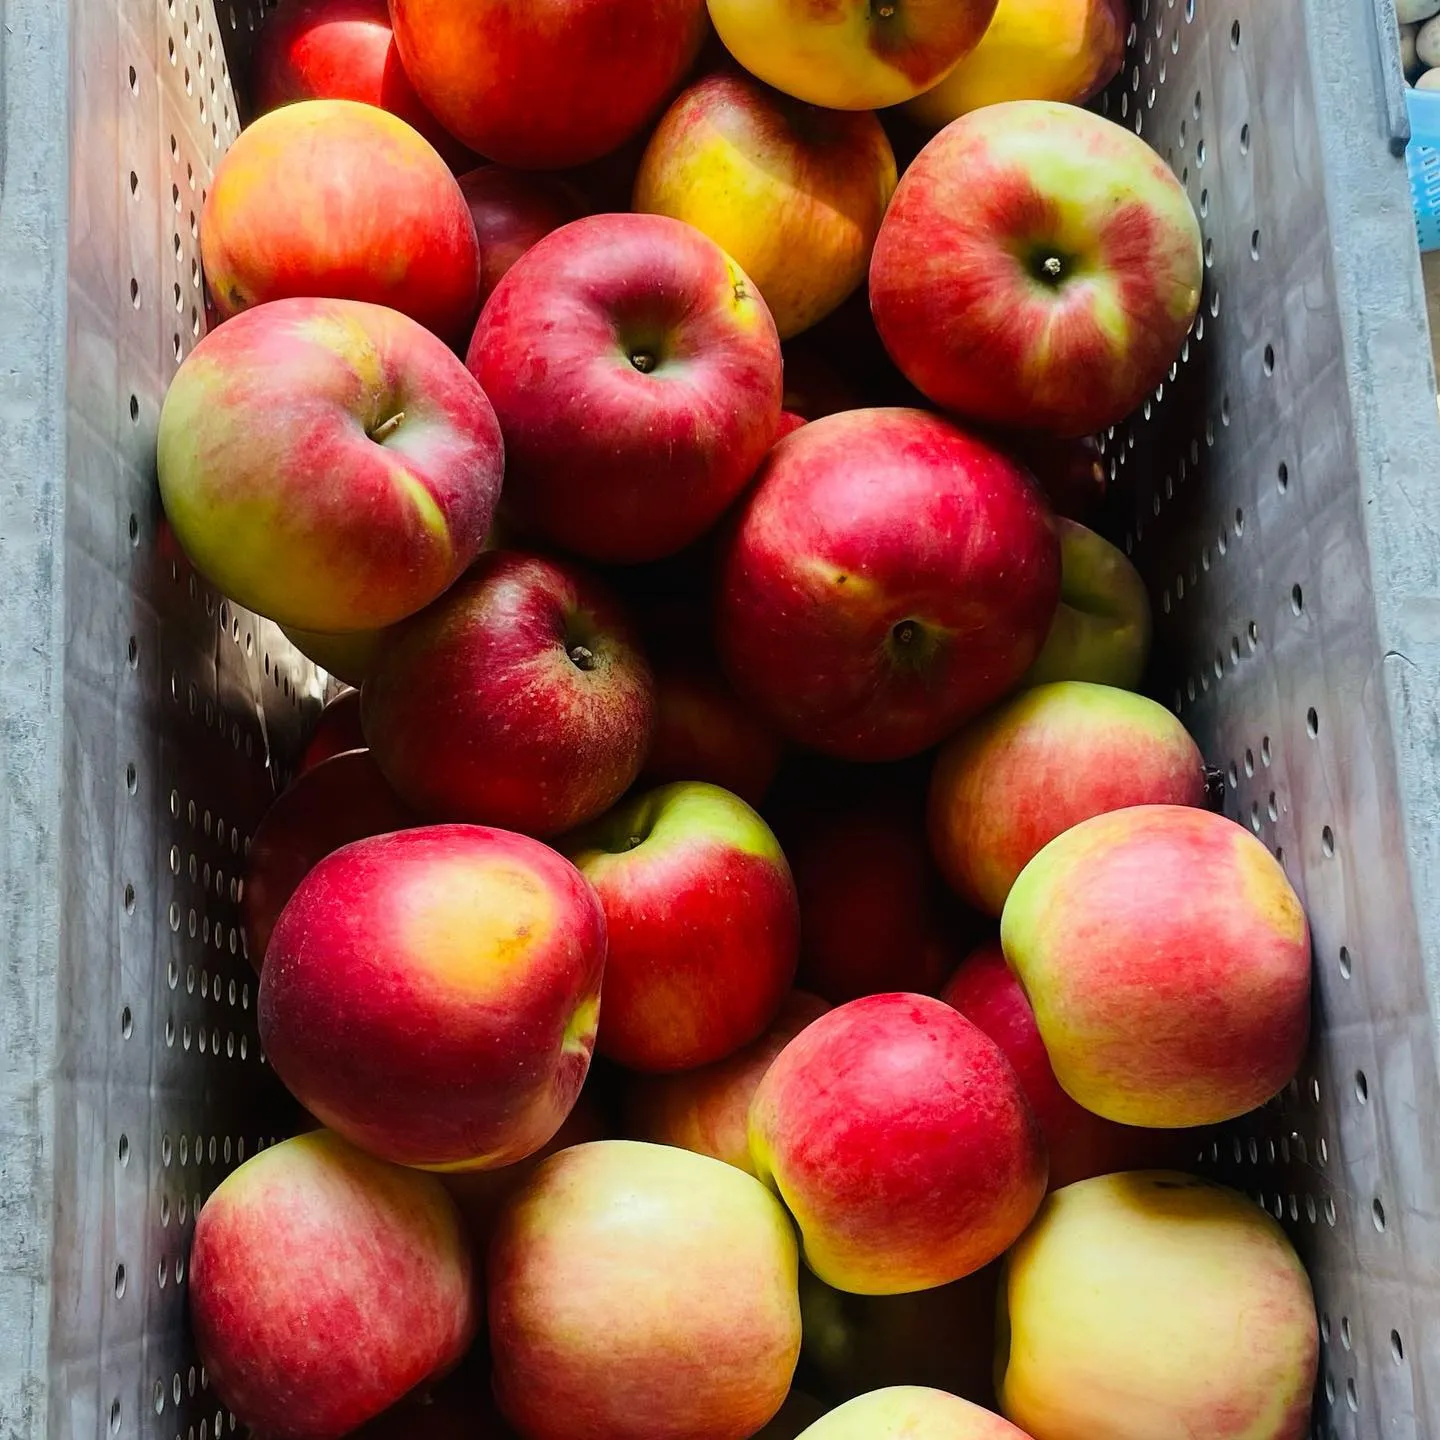 長野県小布施町牧六農園産今年一番早いりんご「なつあかり」収穫...